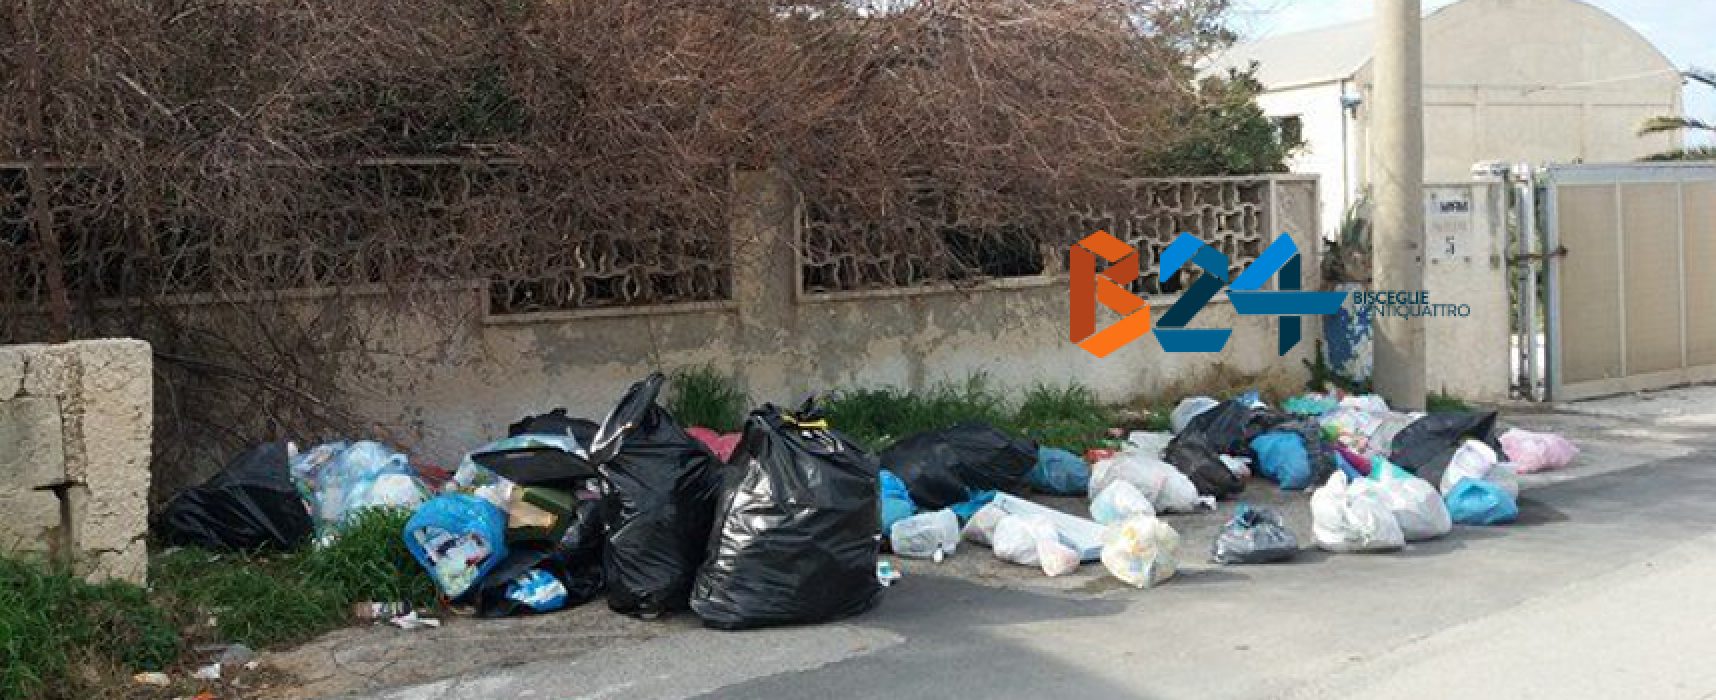 Ancora rifiuti abbandonati per strada: zona BiMarmi invasa da sacchetti di immondizia / FOTO